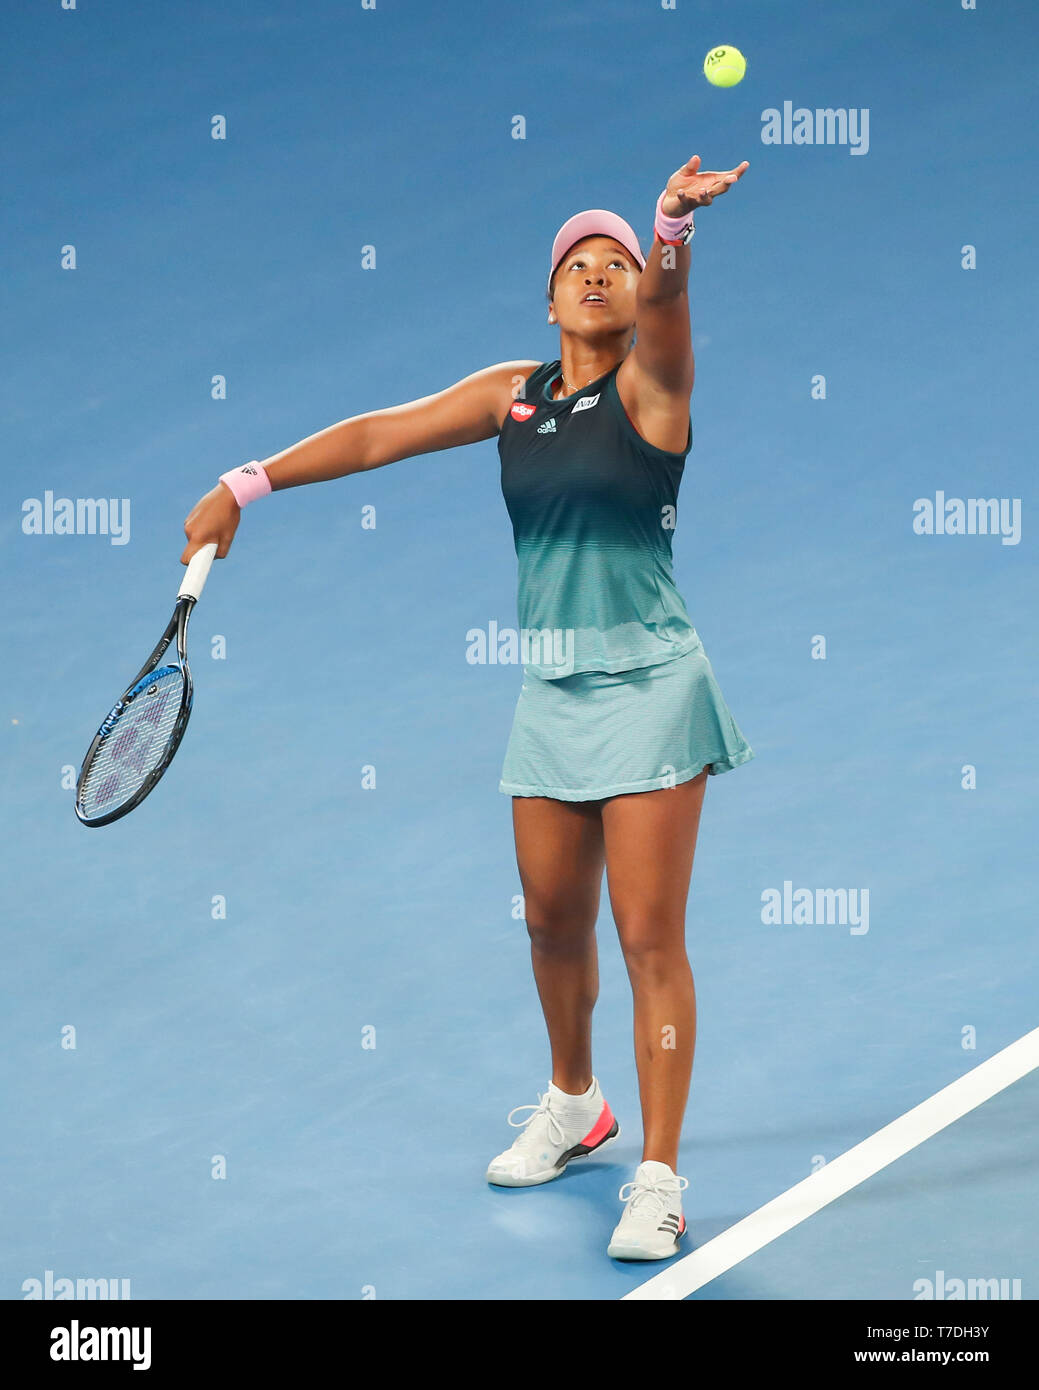 Japanese tennis player Naomi Osaka playing during Australian Open 2019 tennis tournament, Melbourne Park, Melbourne, Victoria, Australia Stock Photo